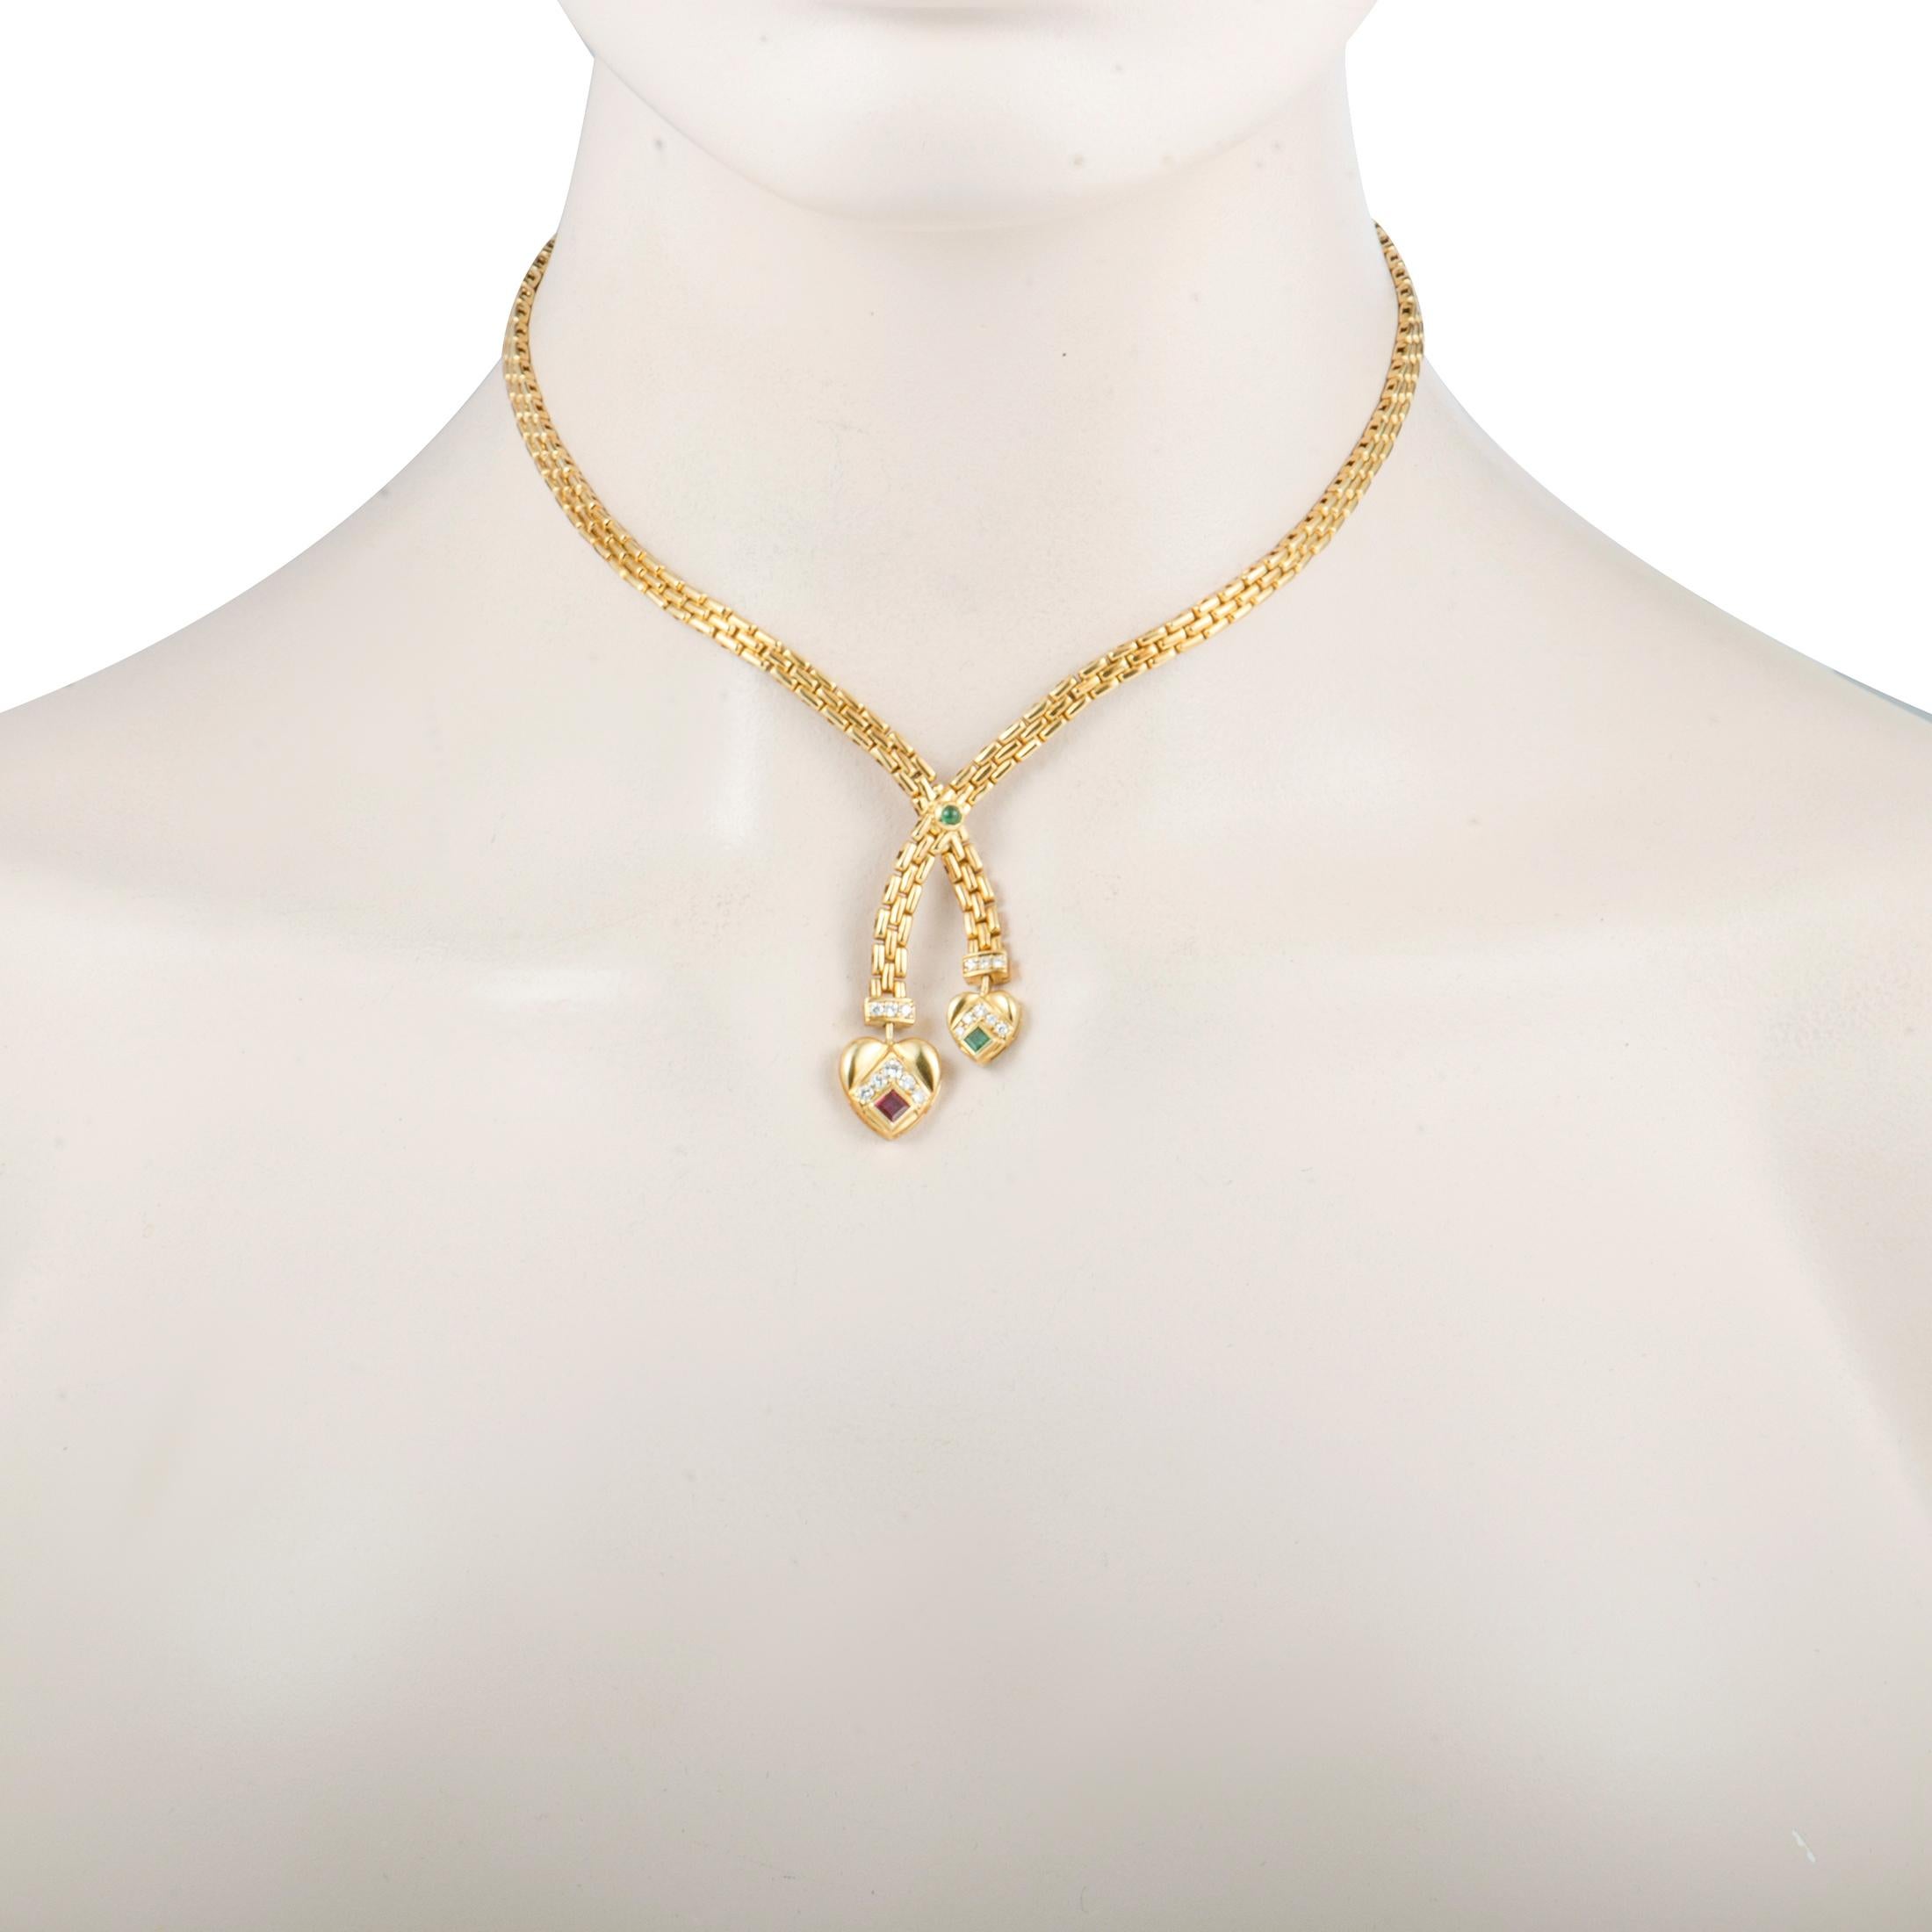 Diese exquisite Vintage-Halskette von Cartier strahlt durch ihr bemerkenswertes Design höchste Eleganz aus. Die wunderschöne Halskette ist aus edlem 18-karätigem Gelbgold gefertigt und mit fesselnden Rubinen, verführerischen Smaragden und